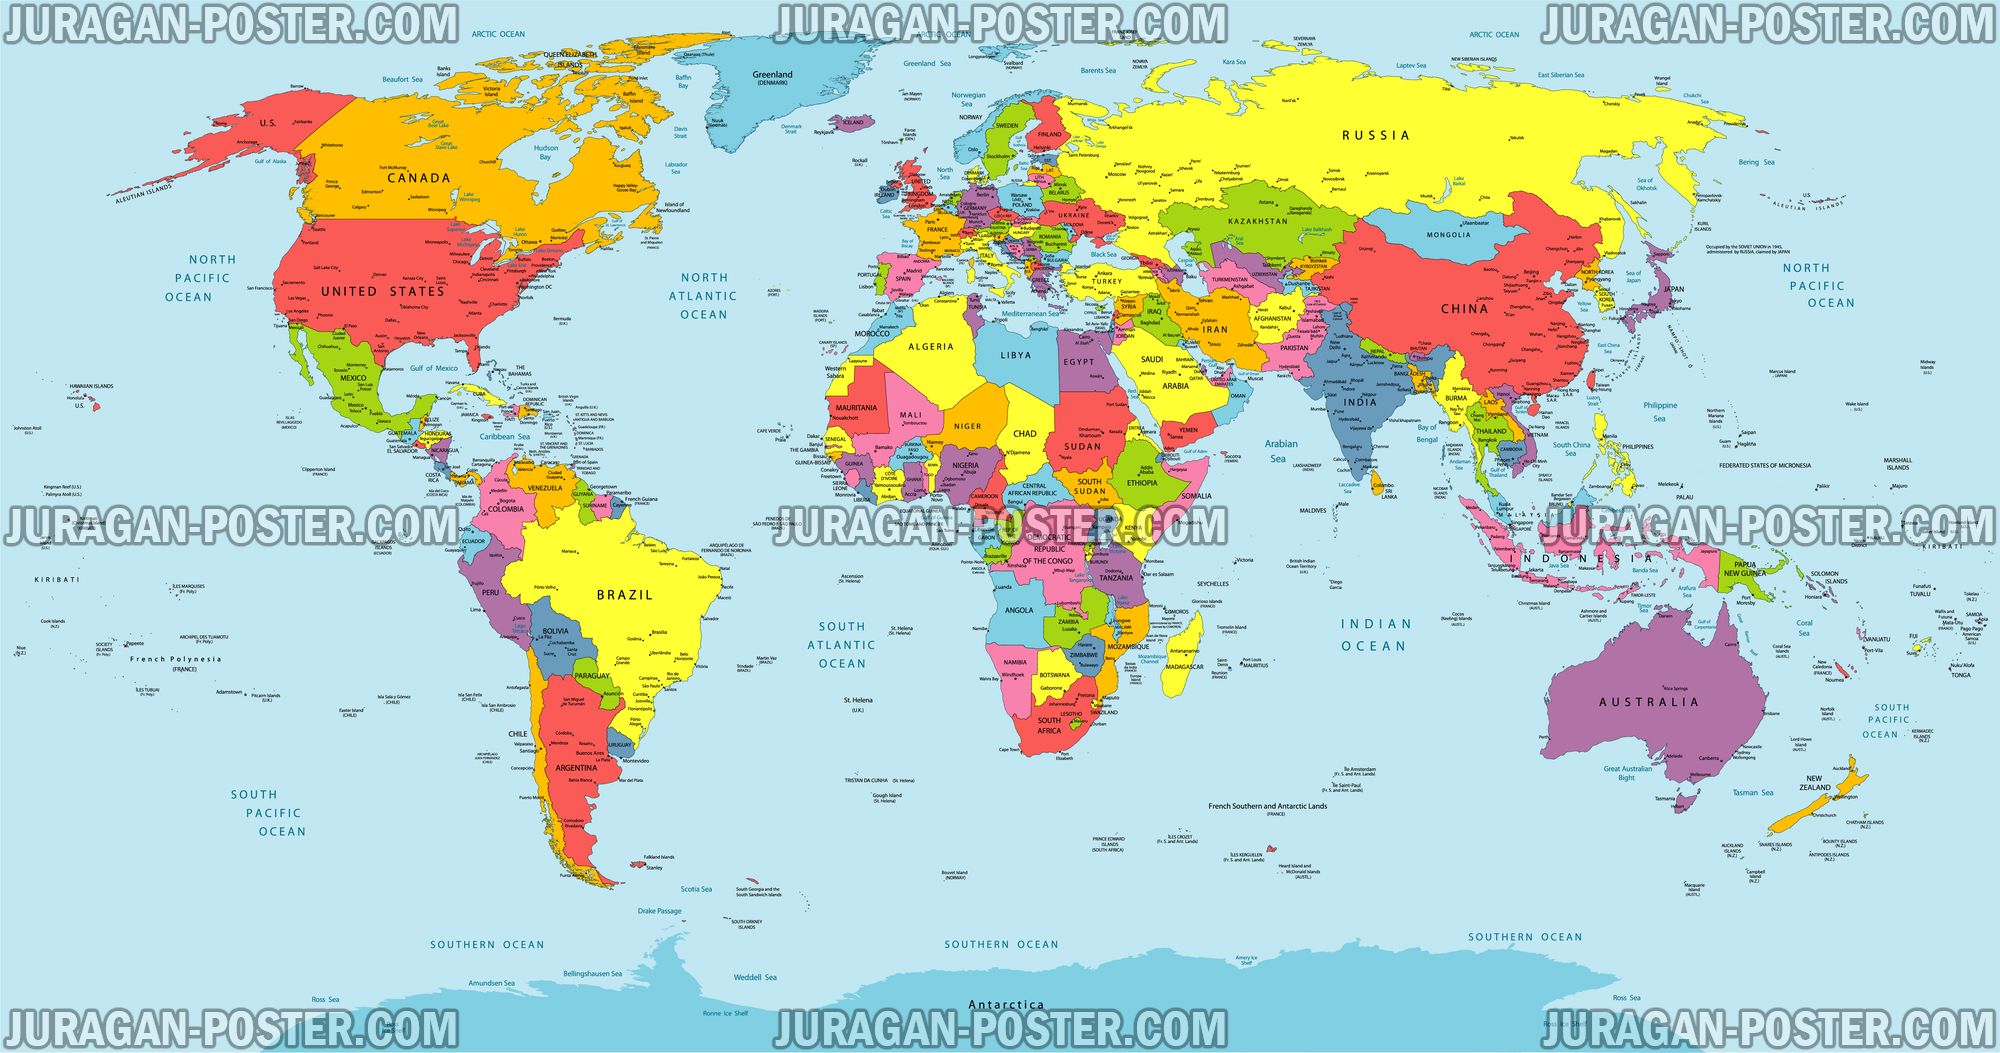 World Map Peta Dunia Jual Poster Di Juragan Poster